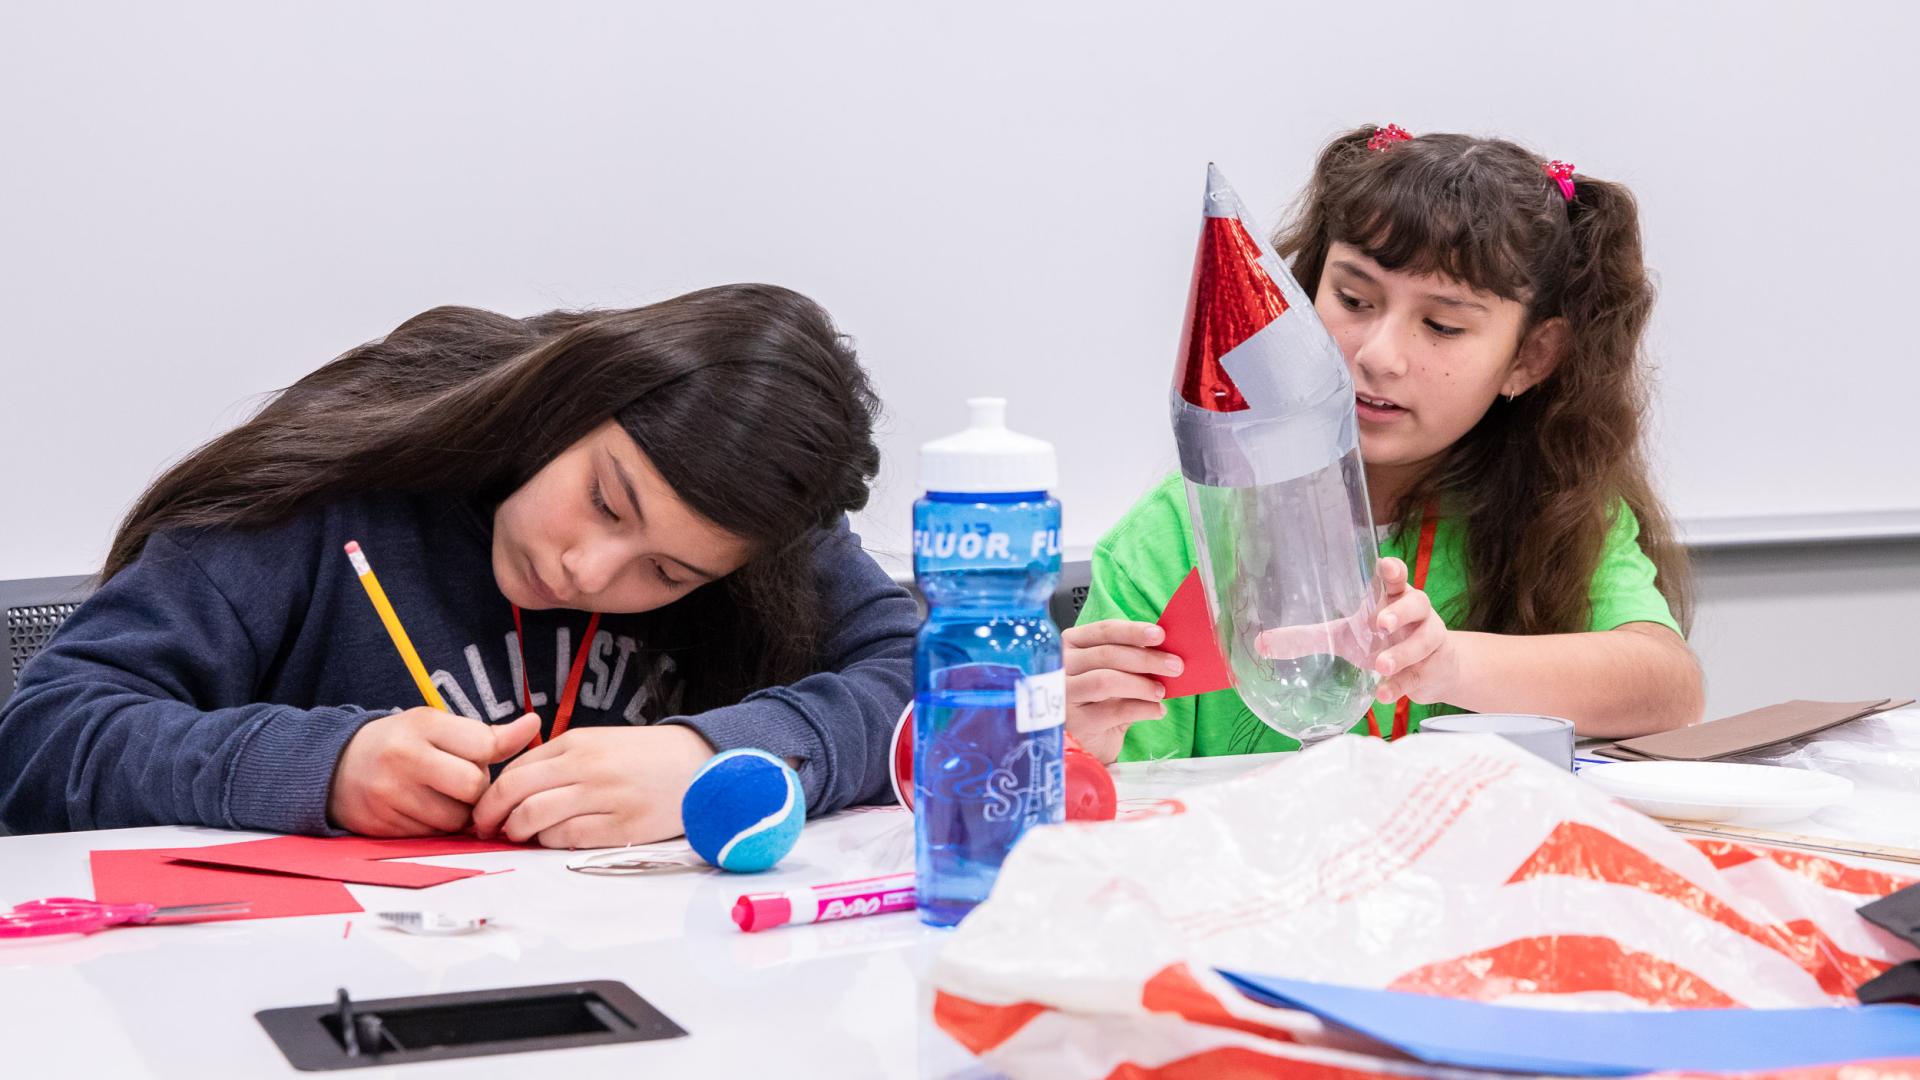 Girls Build rocket at STEM camp